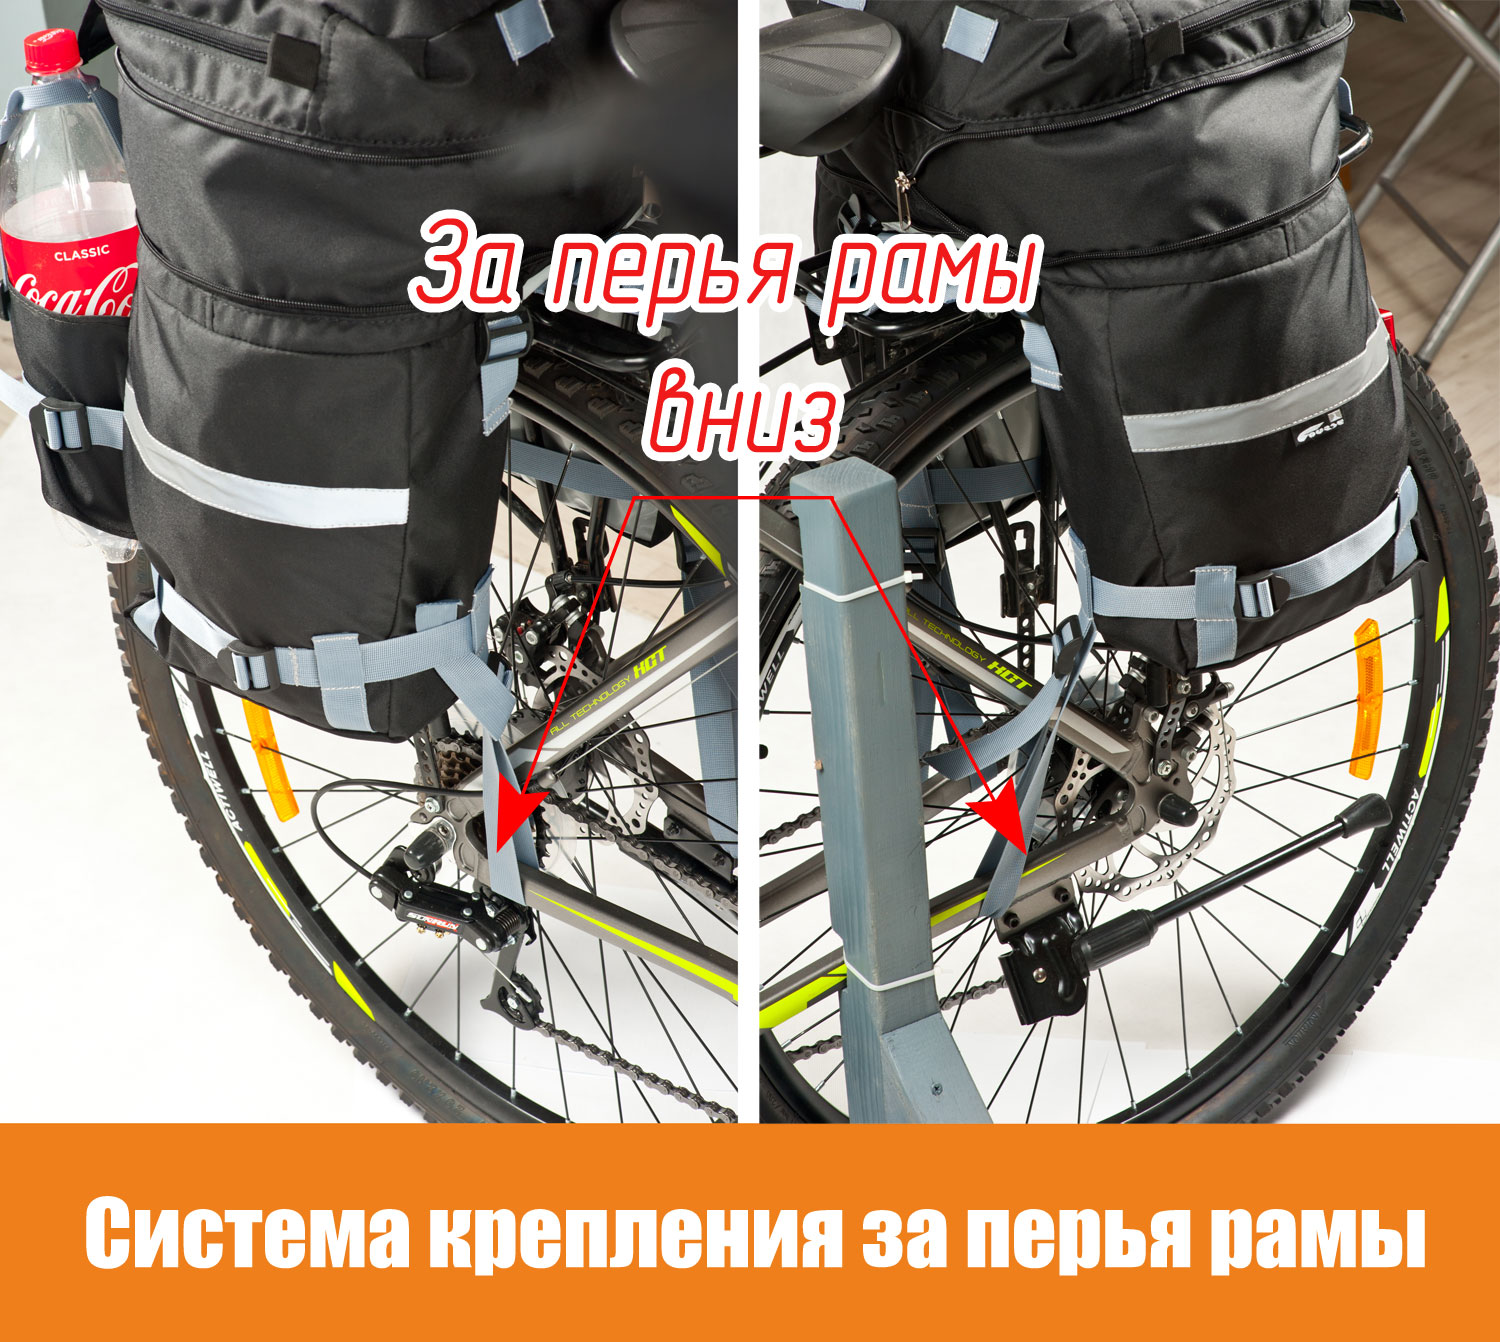 Как велосипедный рюкзак (штаны) крепится за перья рамы велосипеда